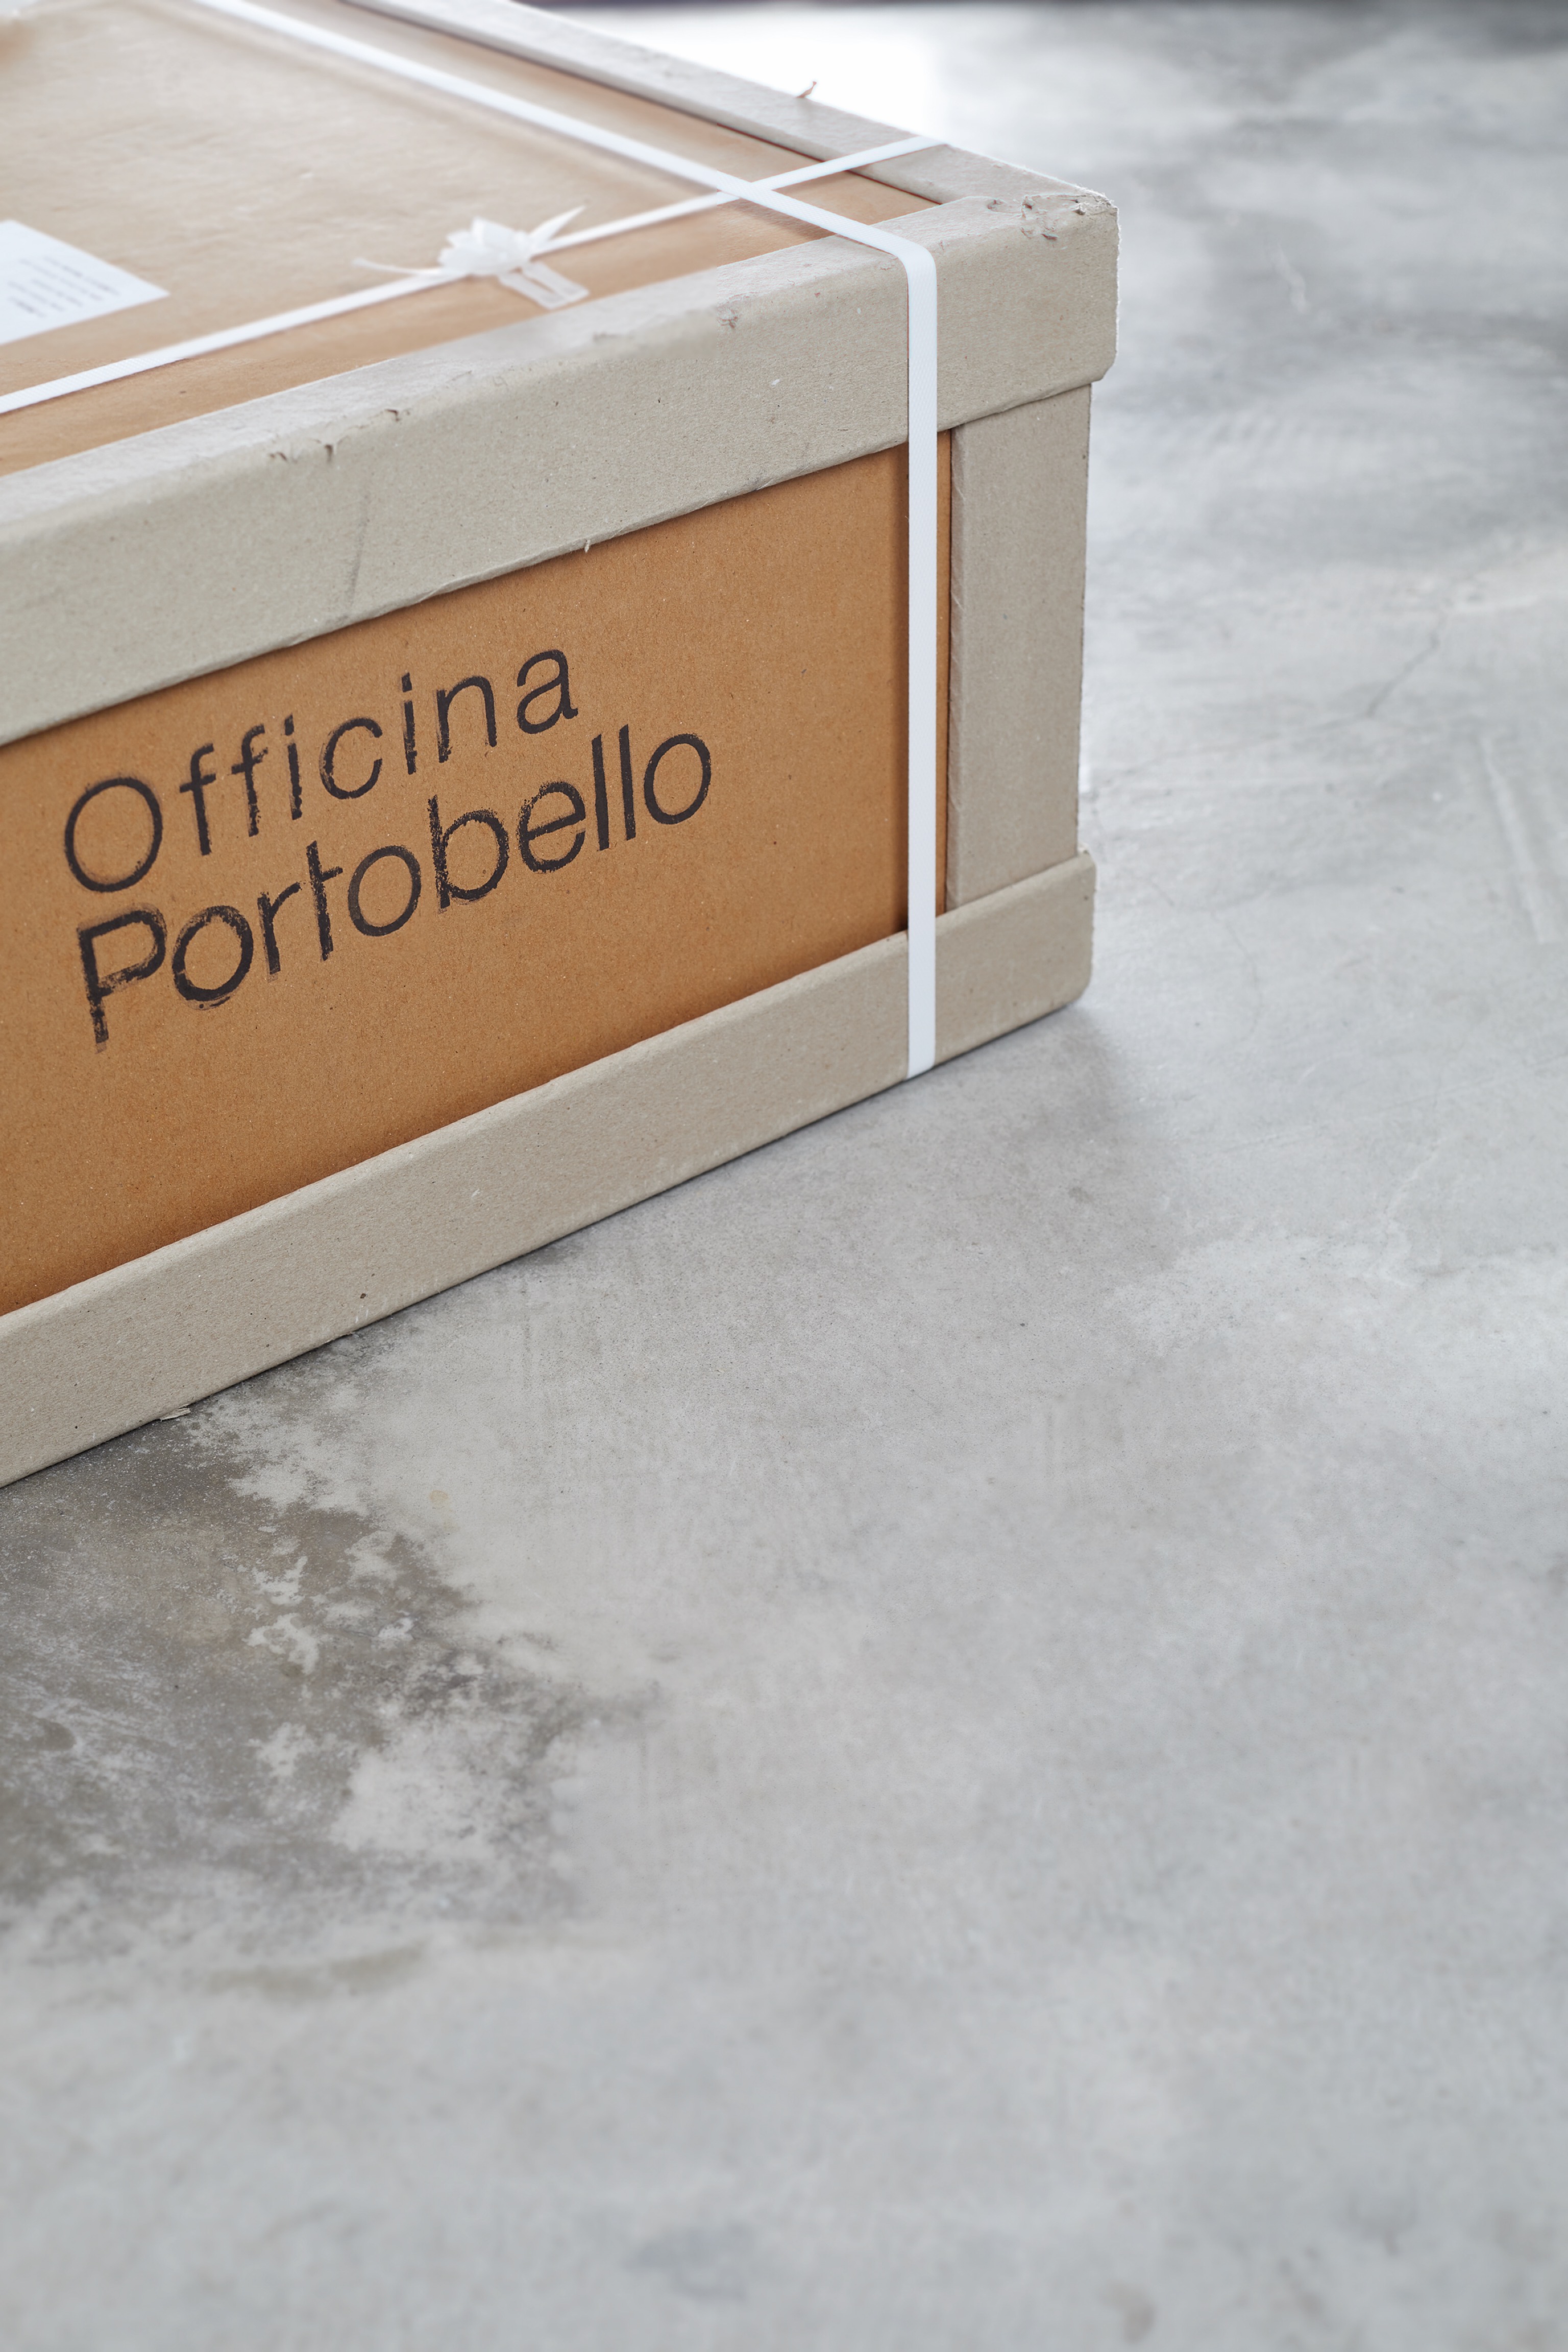 Embalagem do Prêt-à-Porter, para transportar produtos de porcelanato para todo o Brasil